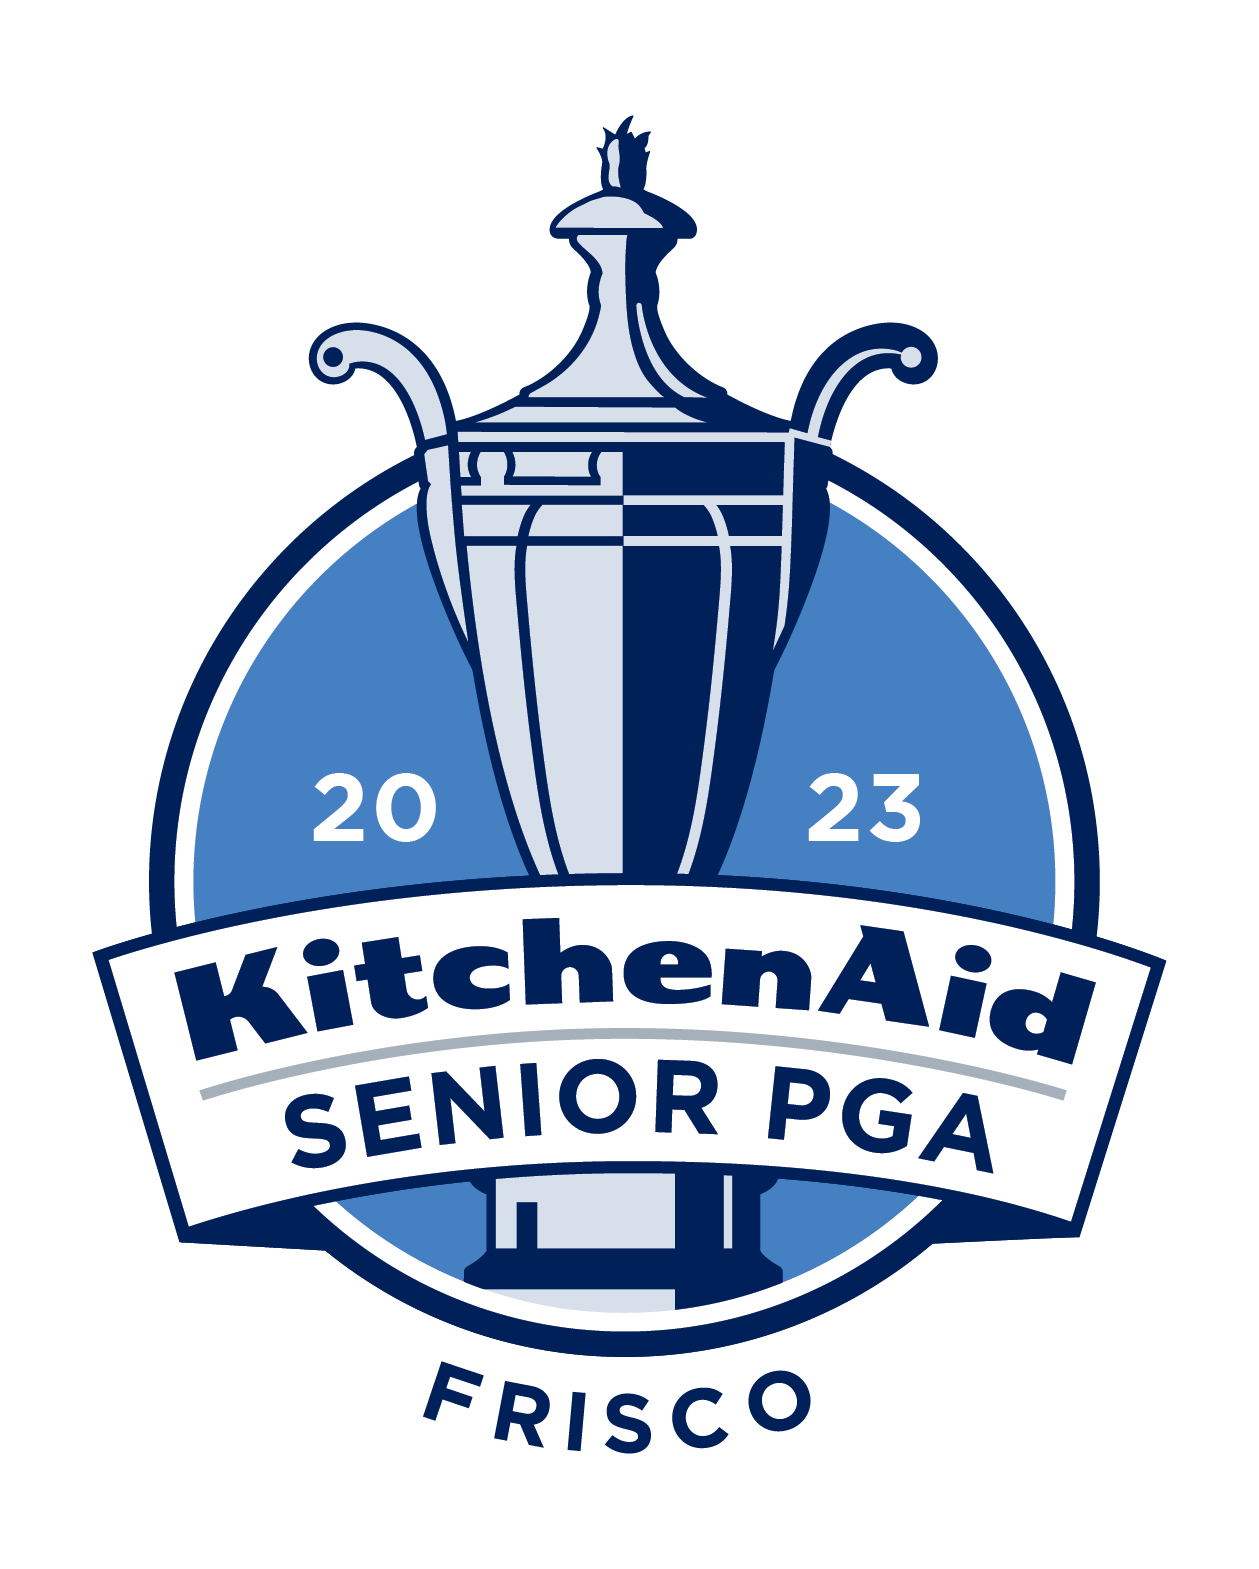 KitchenAid Senior PGA